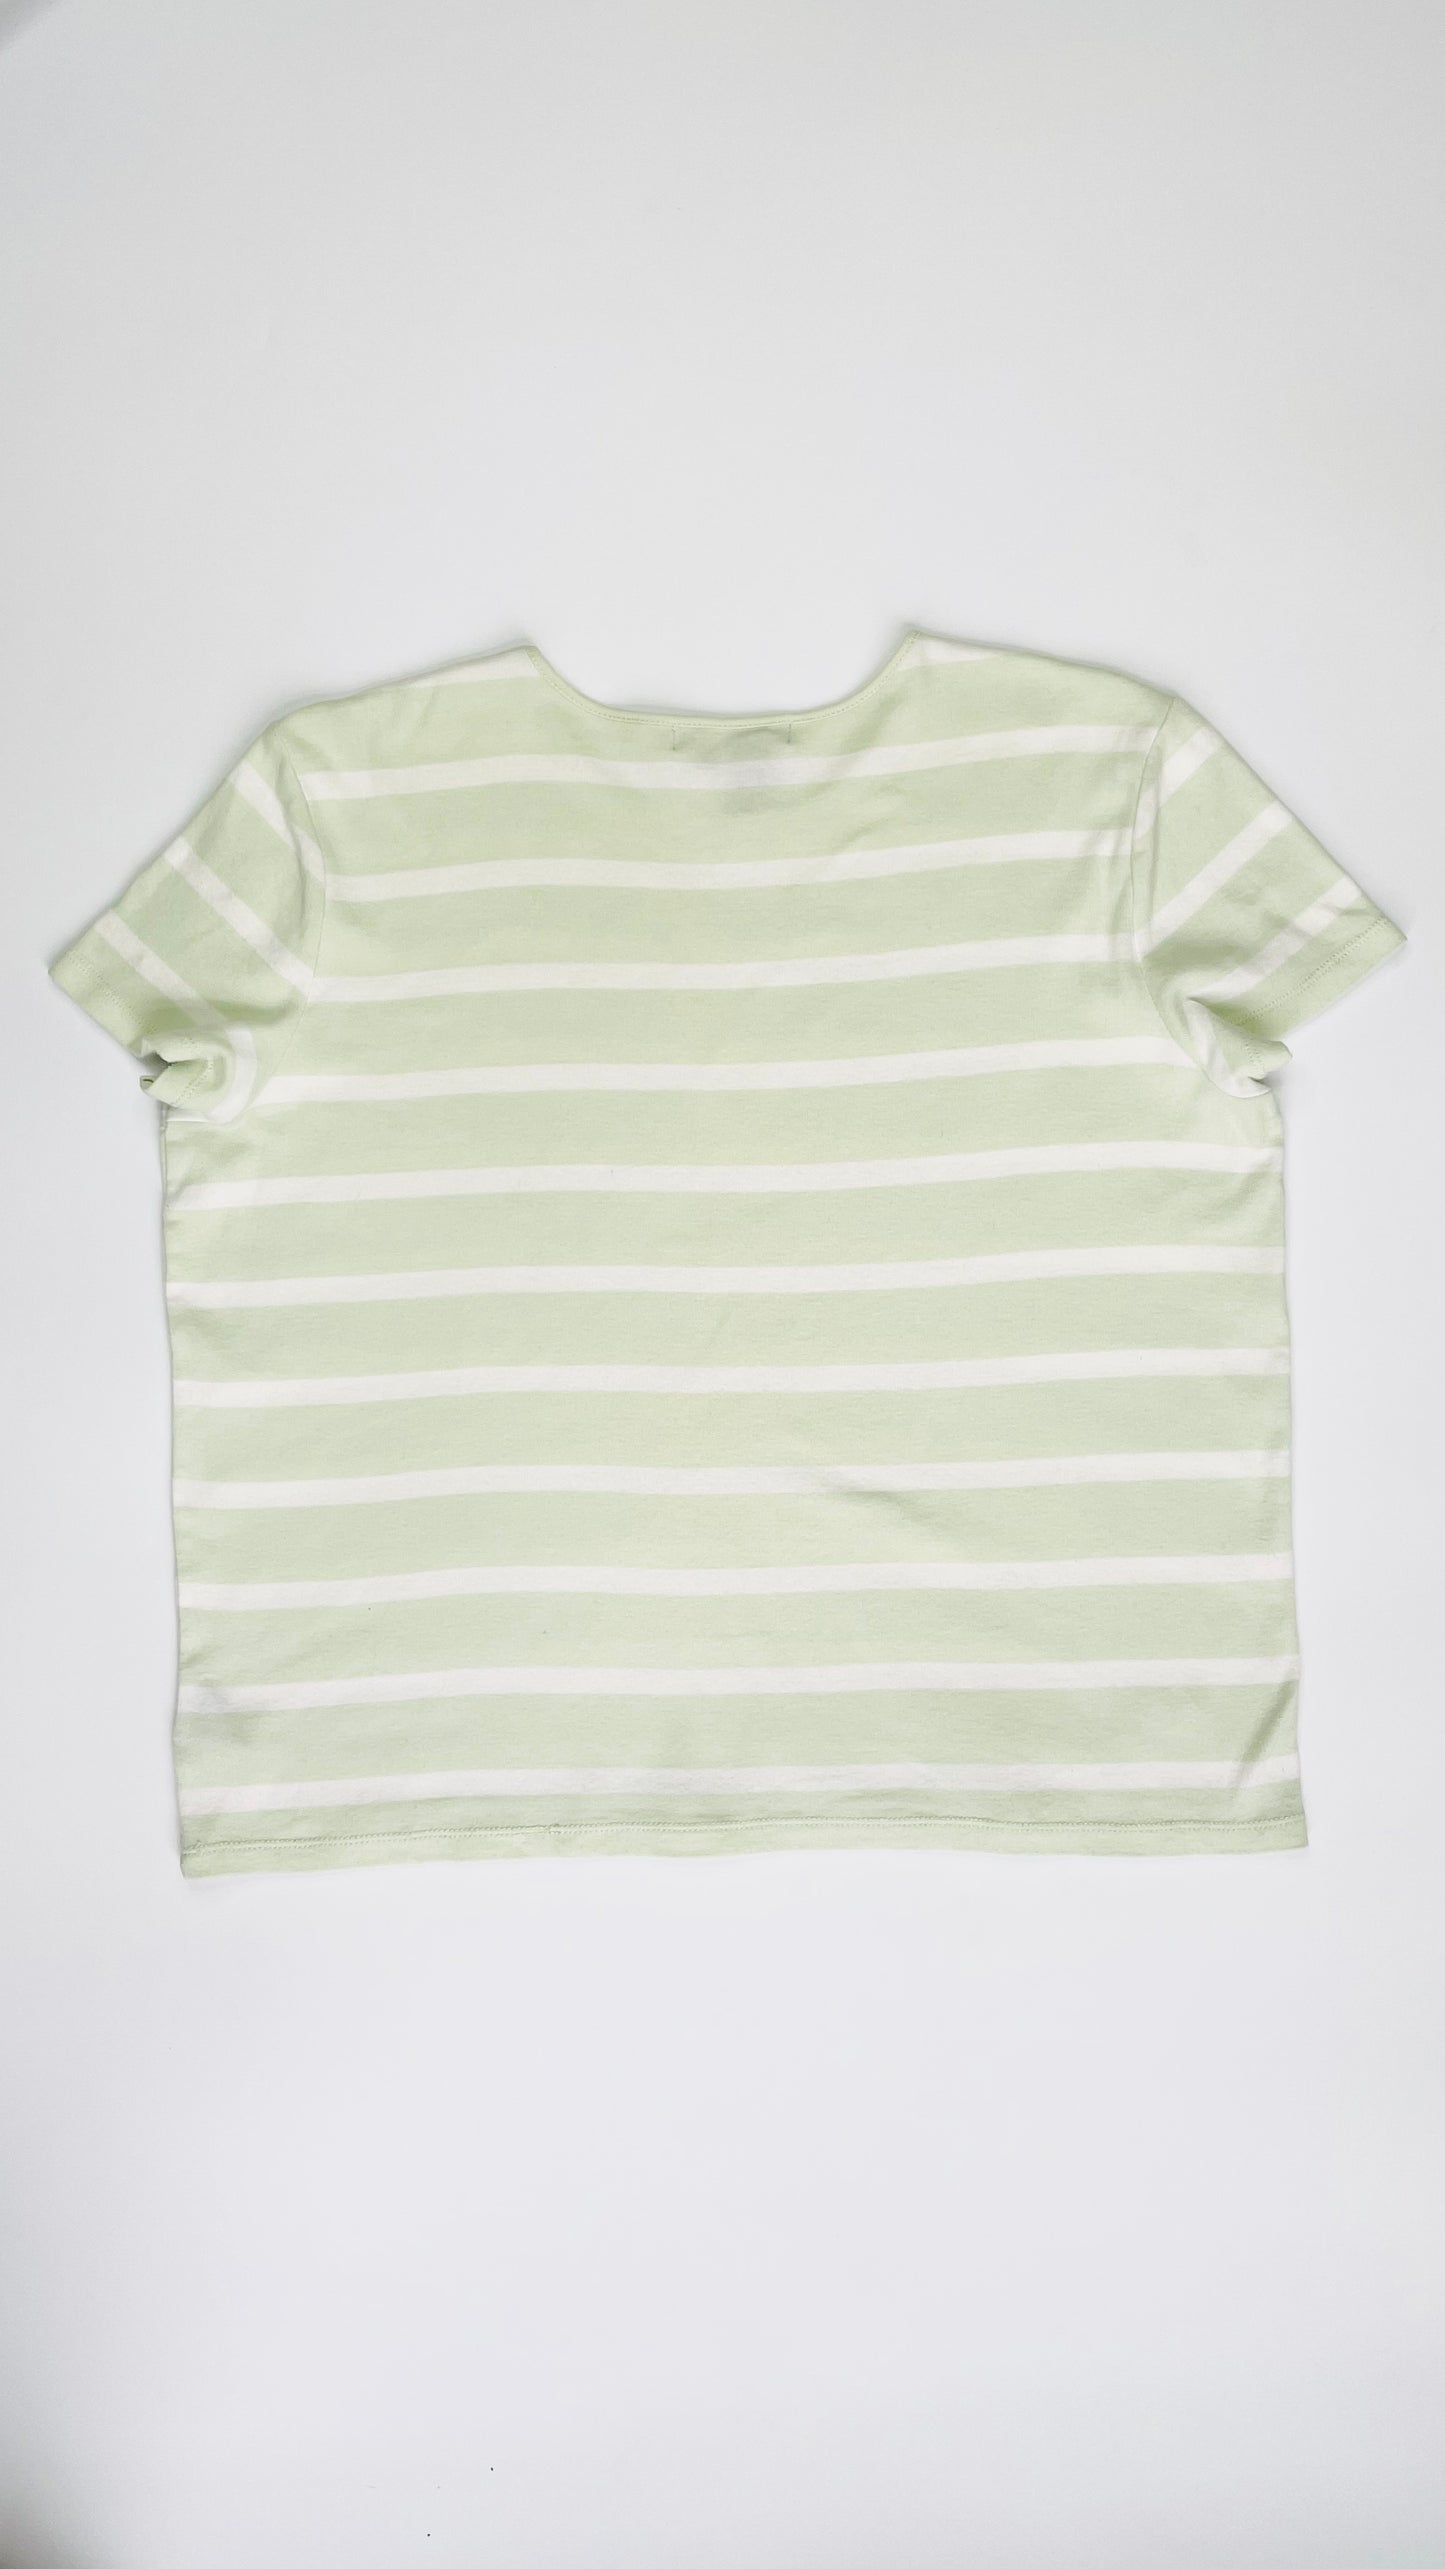 Vintage 90s Lauren Ralph Lauren mint striped knit t shirt - Size L